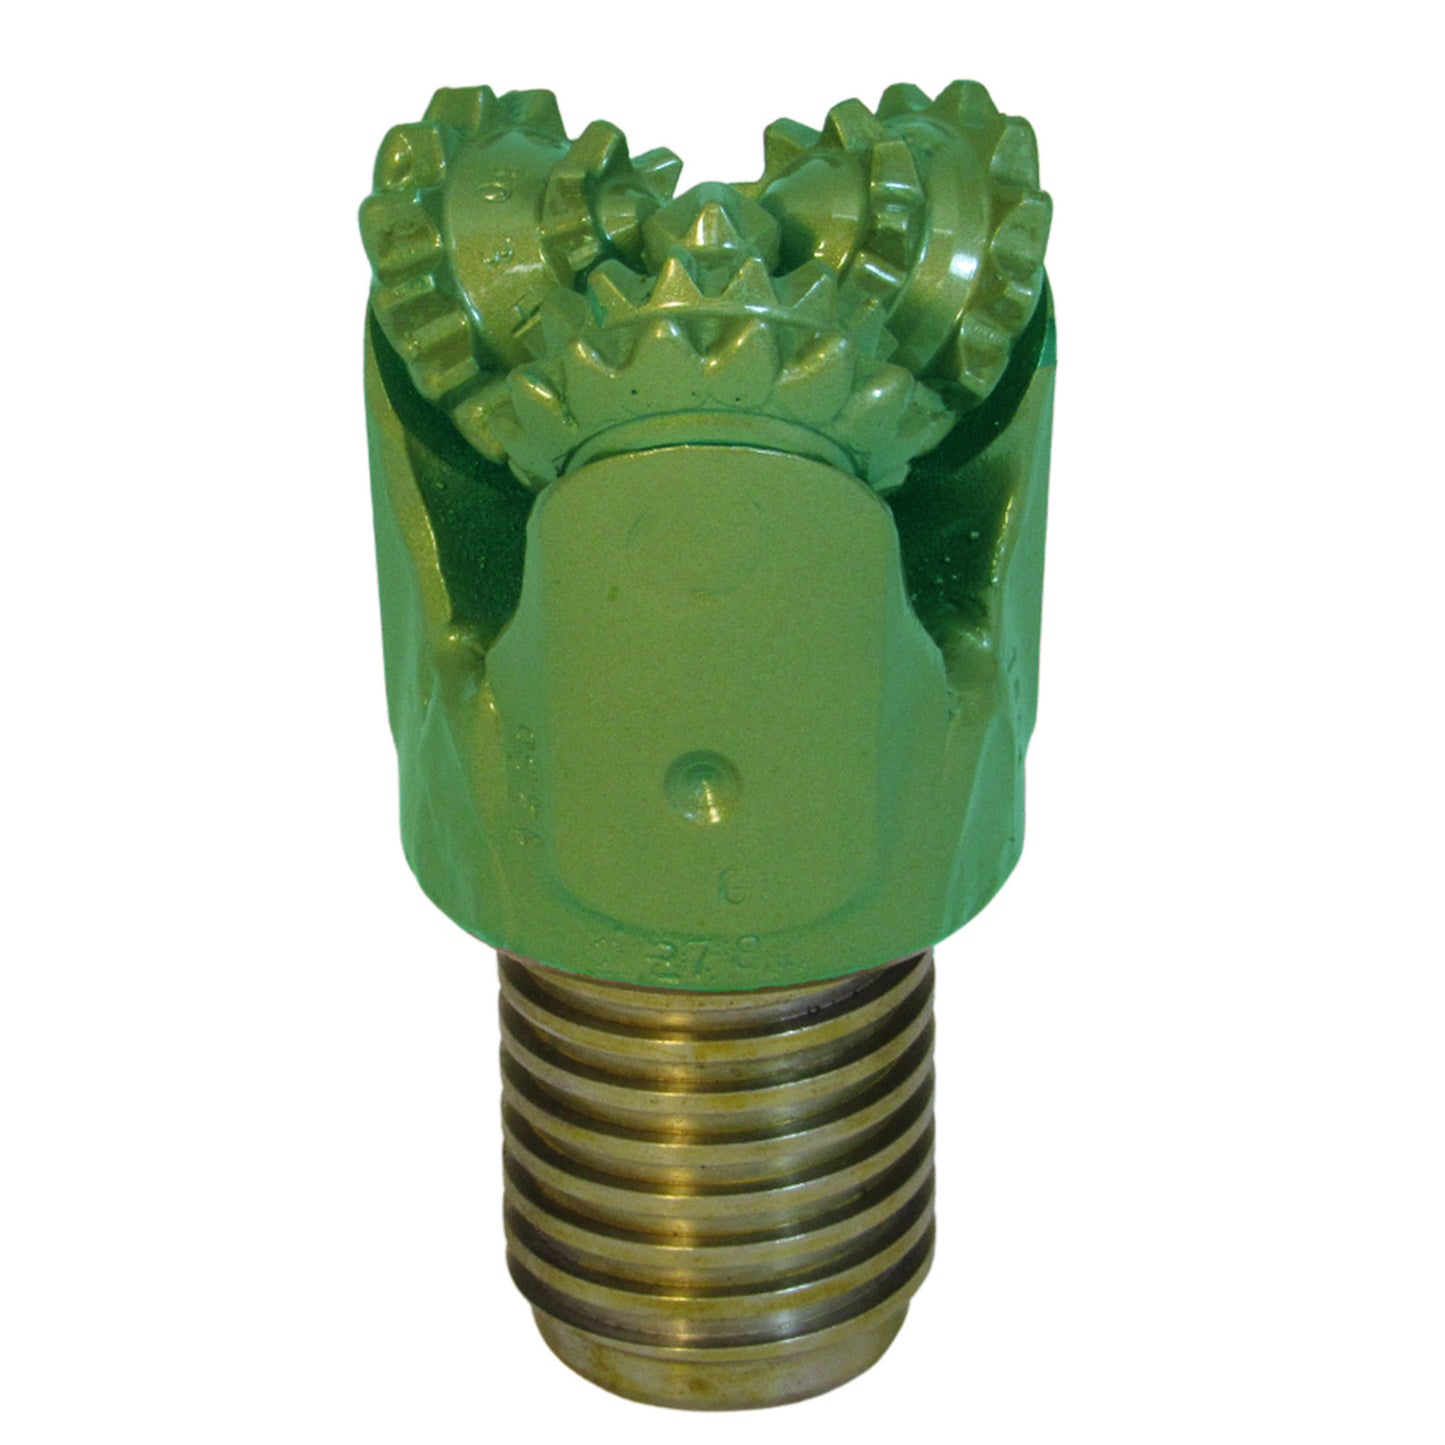 IADC 321 Rock Bit 2 ⅞" Steel Tooth - N Rod Pin